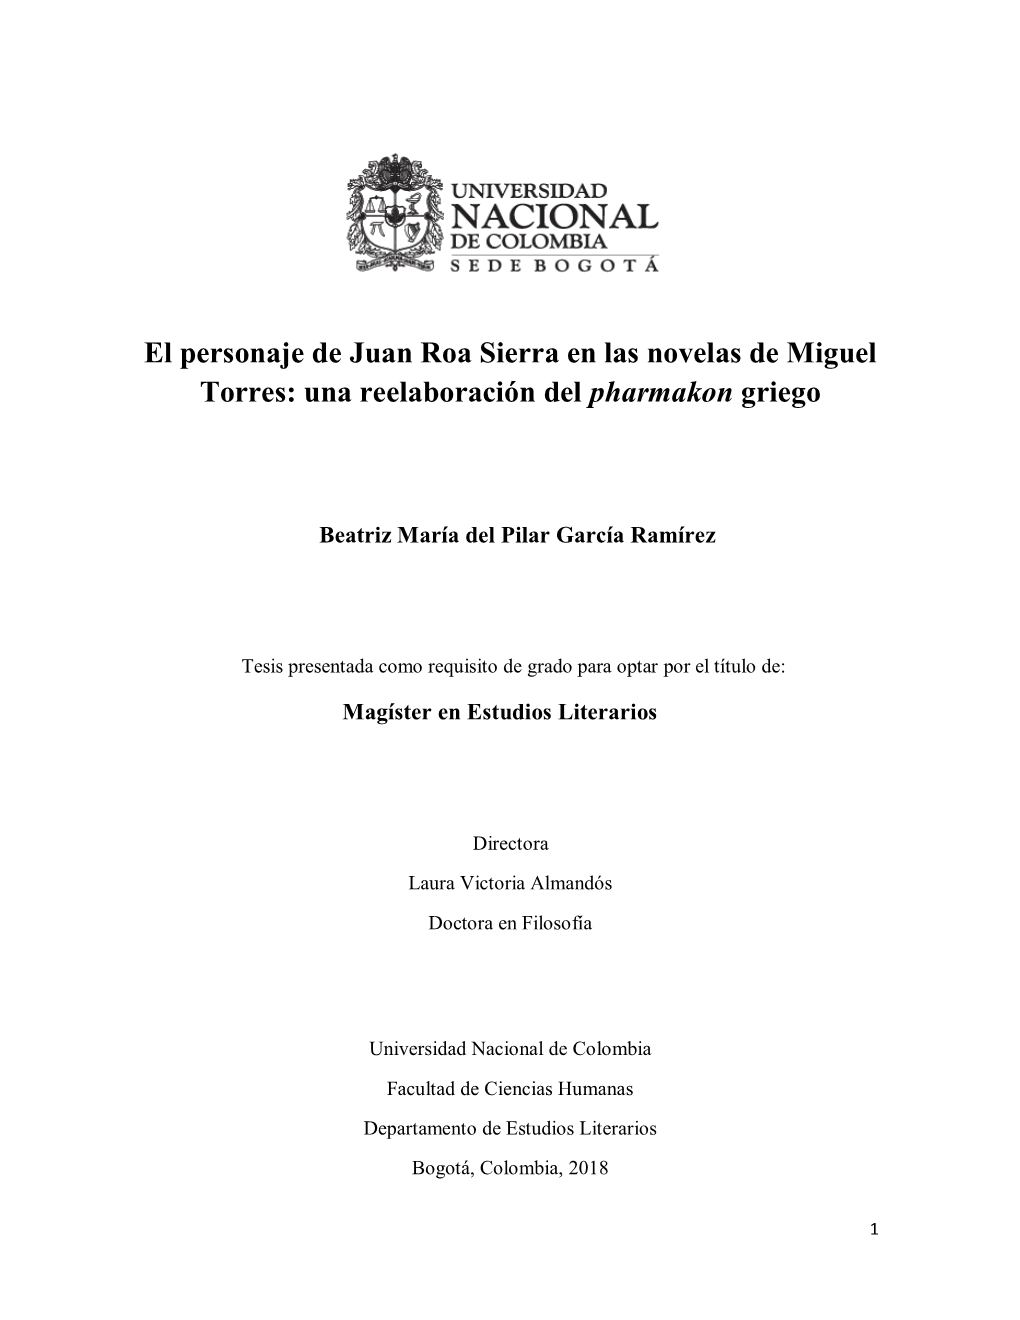 El Personaje De Juan Roa Sierra En Las Novelas De Miguel Torres: Una Reelaboración Del Pharmakon Griego